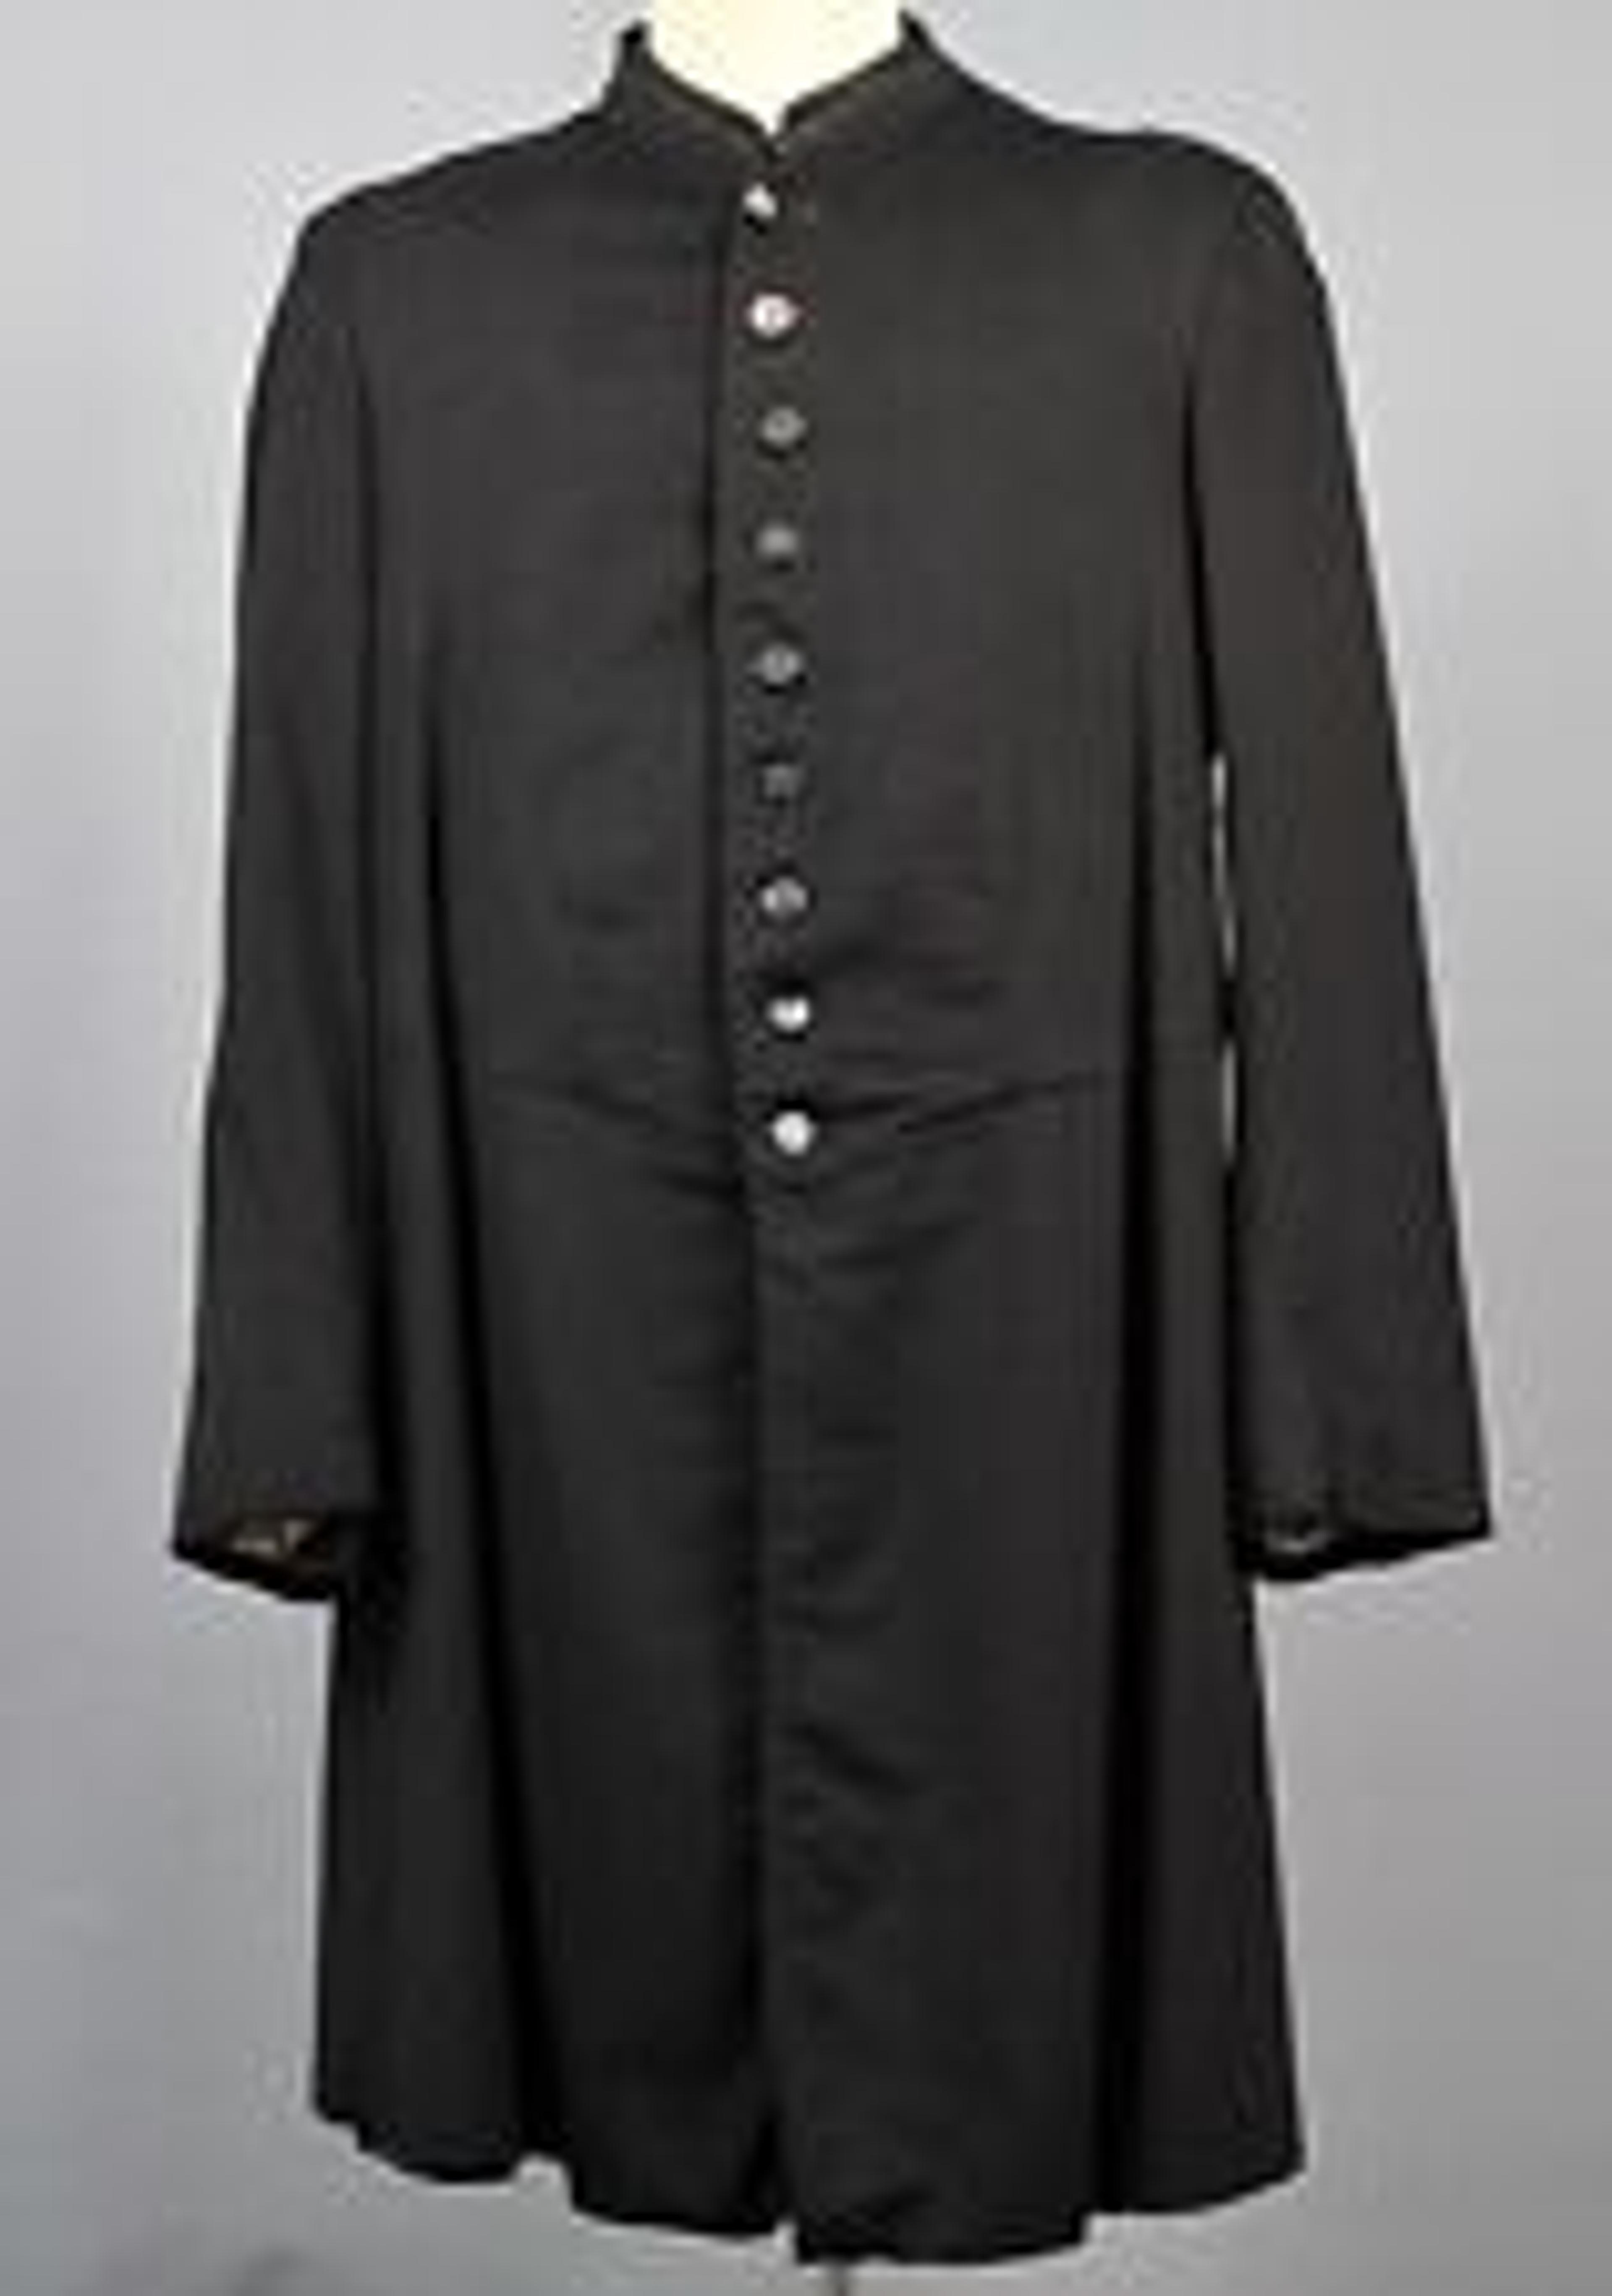 Men's VTG Early 1900s Black Frock Coat / Jacket Sz 40-42 Edwardian Wool | eBay